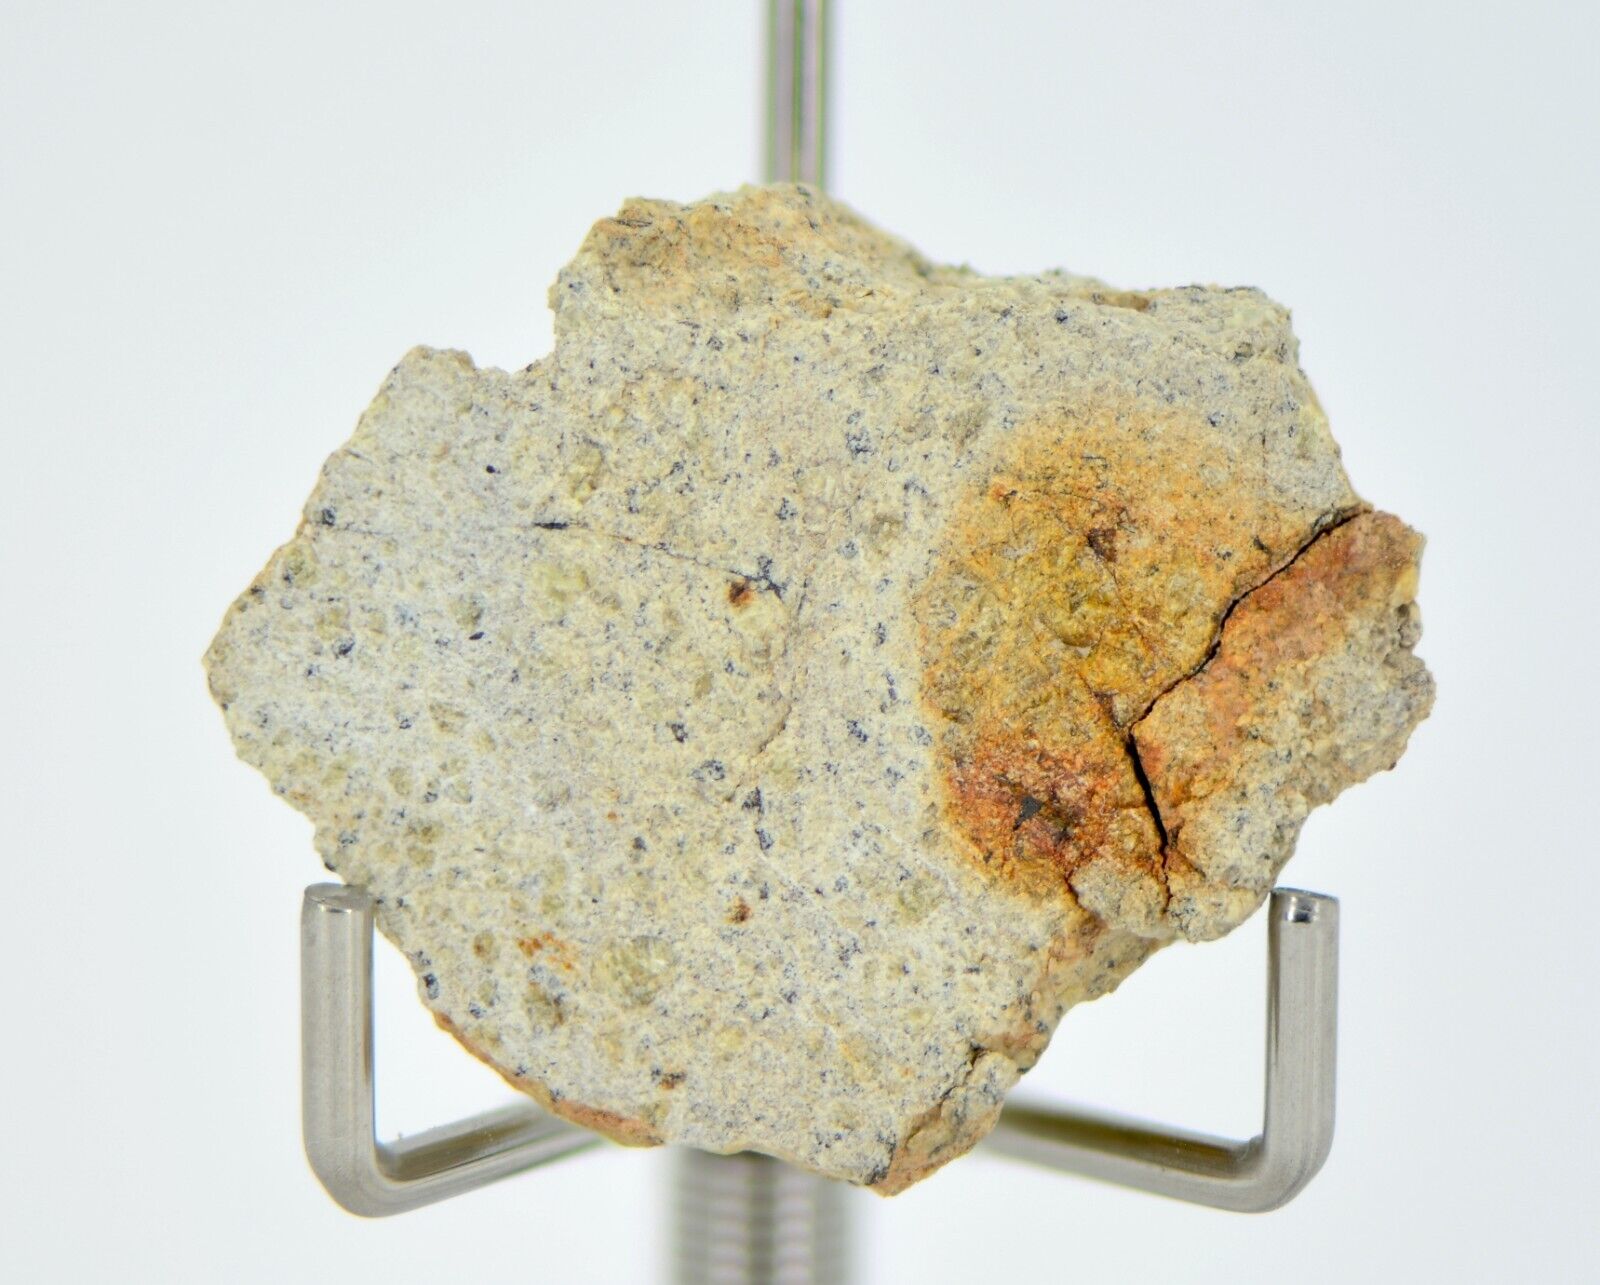 5.60g Diogenite I Beautiful HED Meteorite from Asteroid 4 Vesta - TOP METEORITE